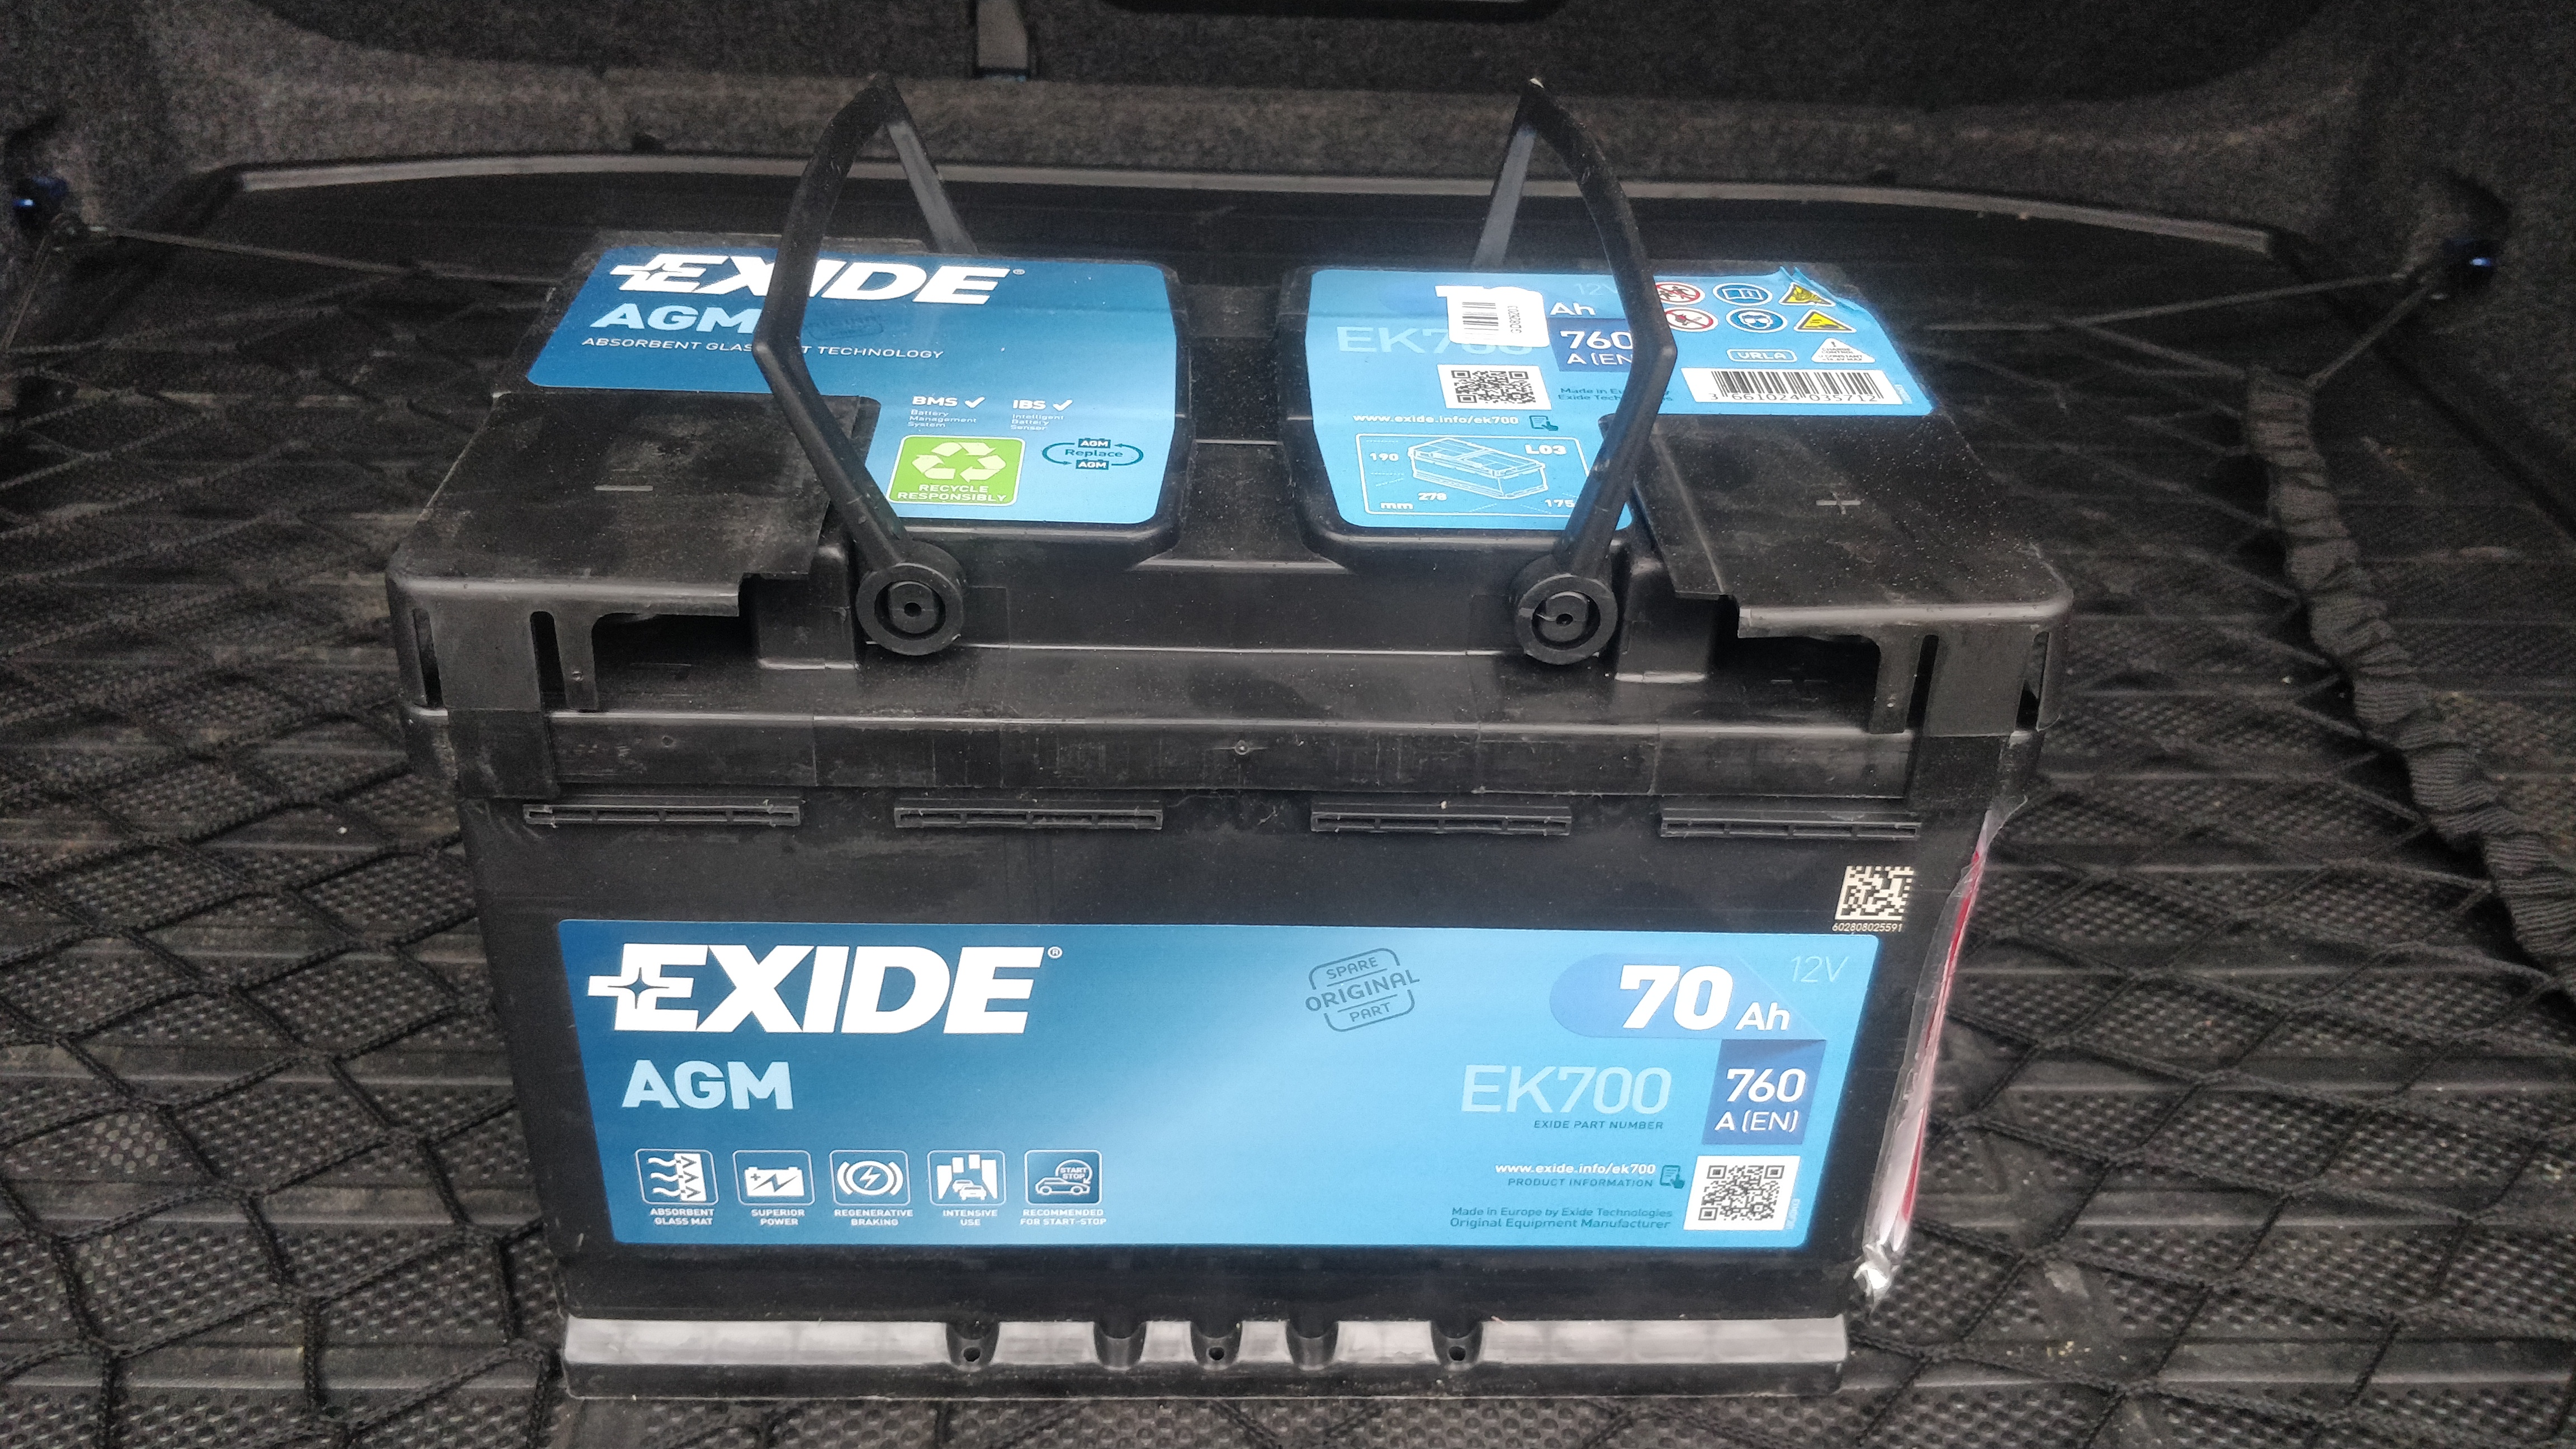 Аккумулятор Exide EK800 купить в Киеве, доставка по Украине!